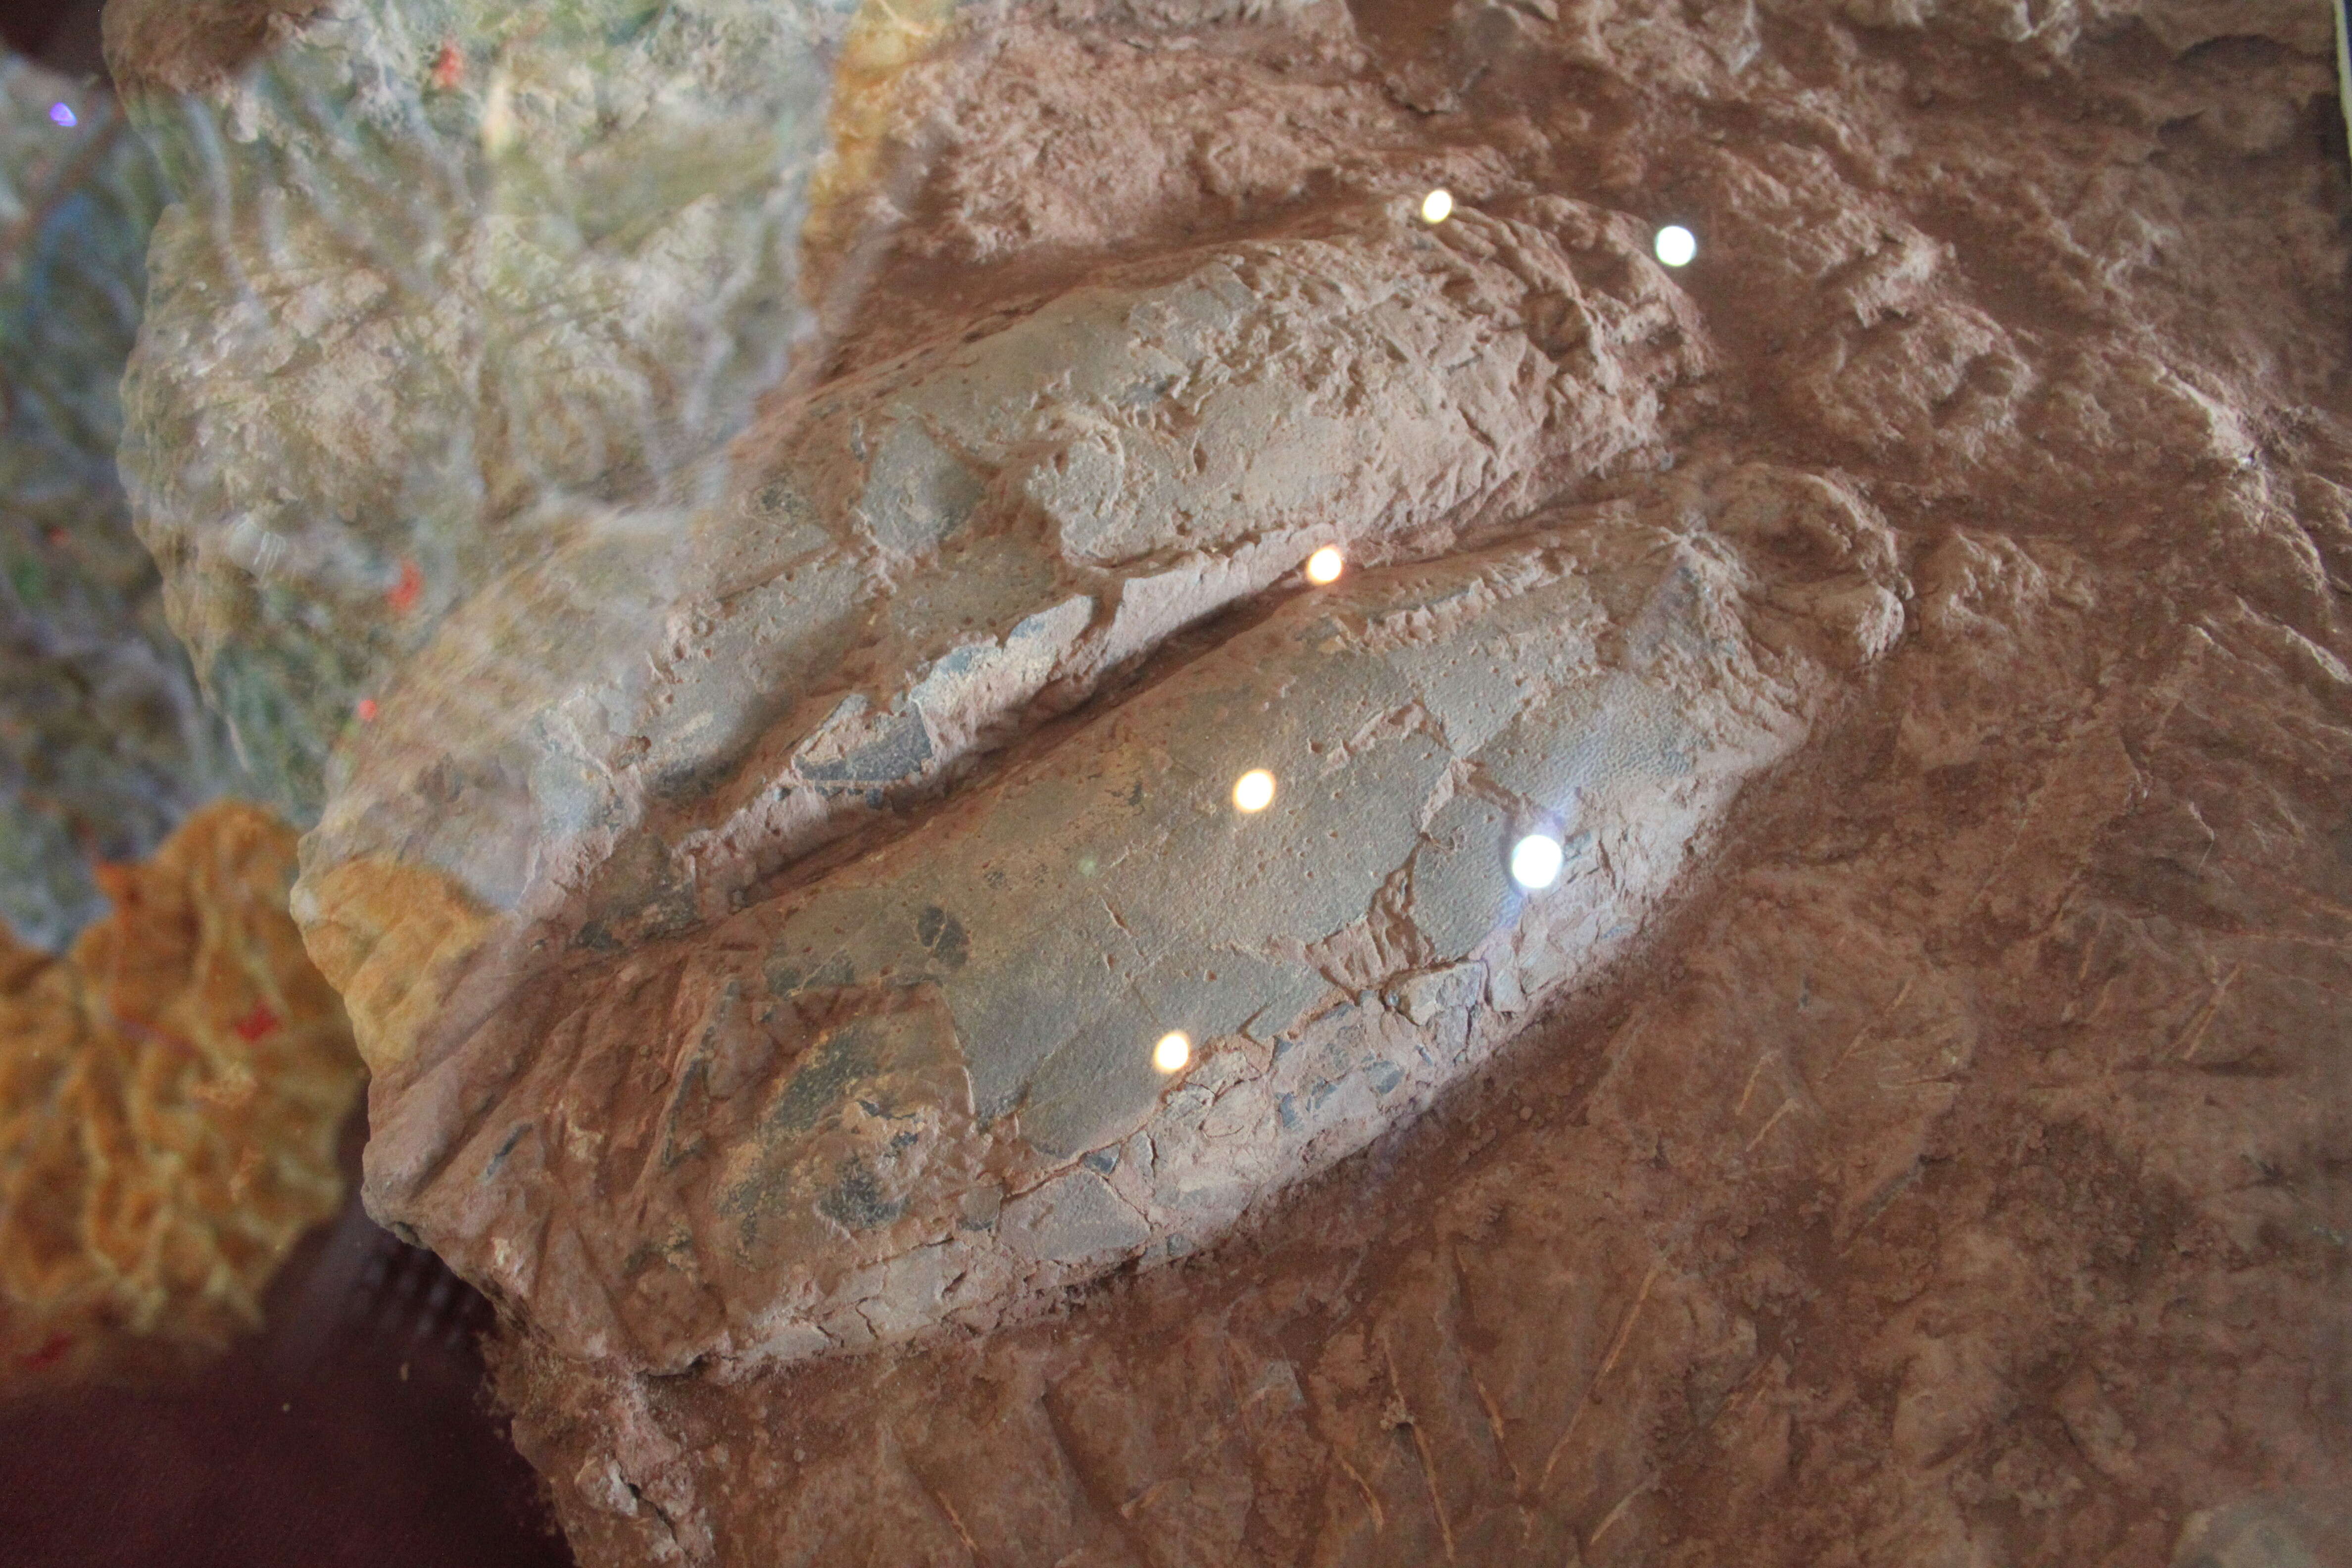 Image of Macroelongatoolithus